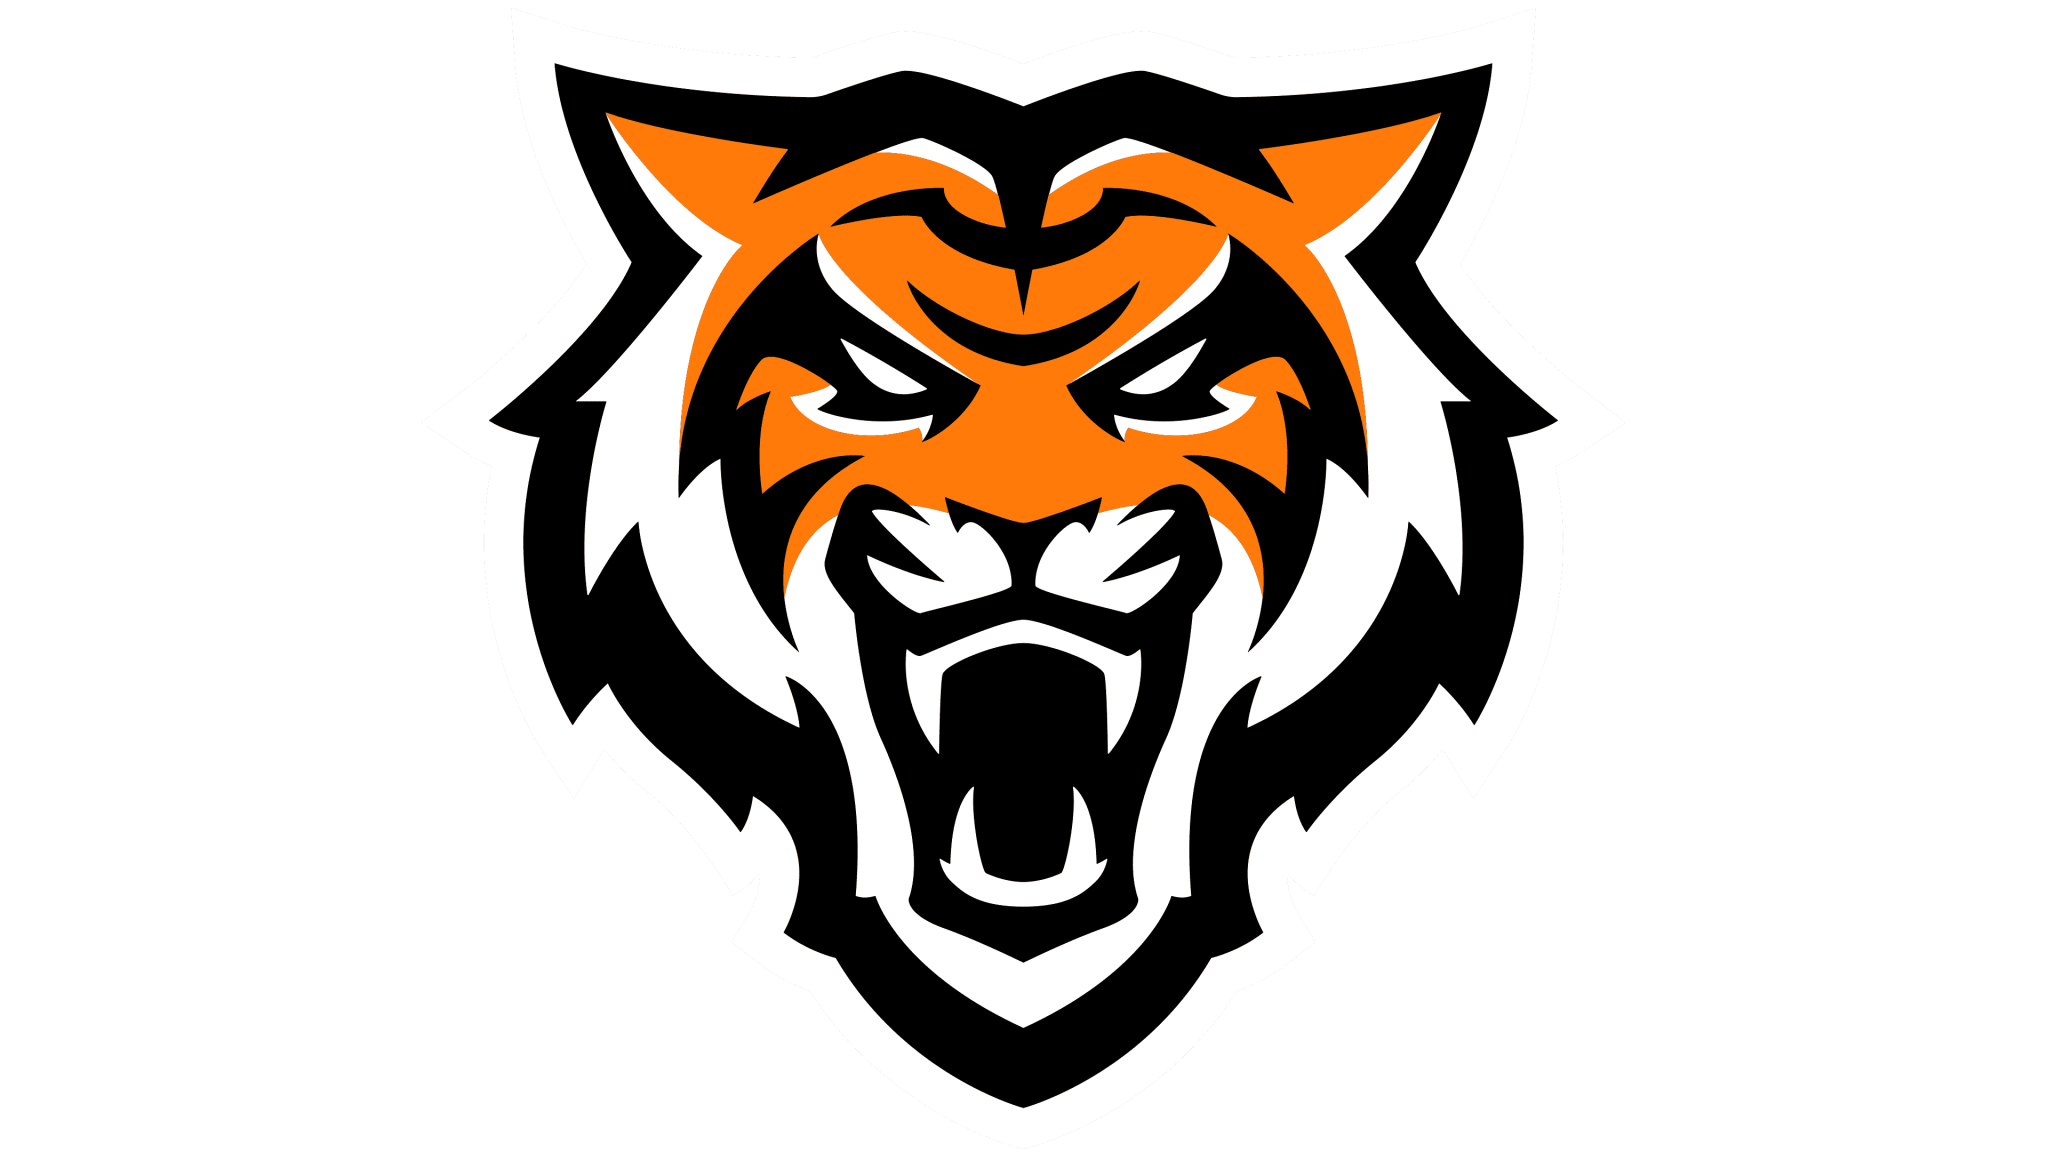 Idaho State Bengals logo.